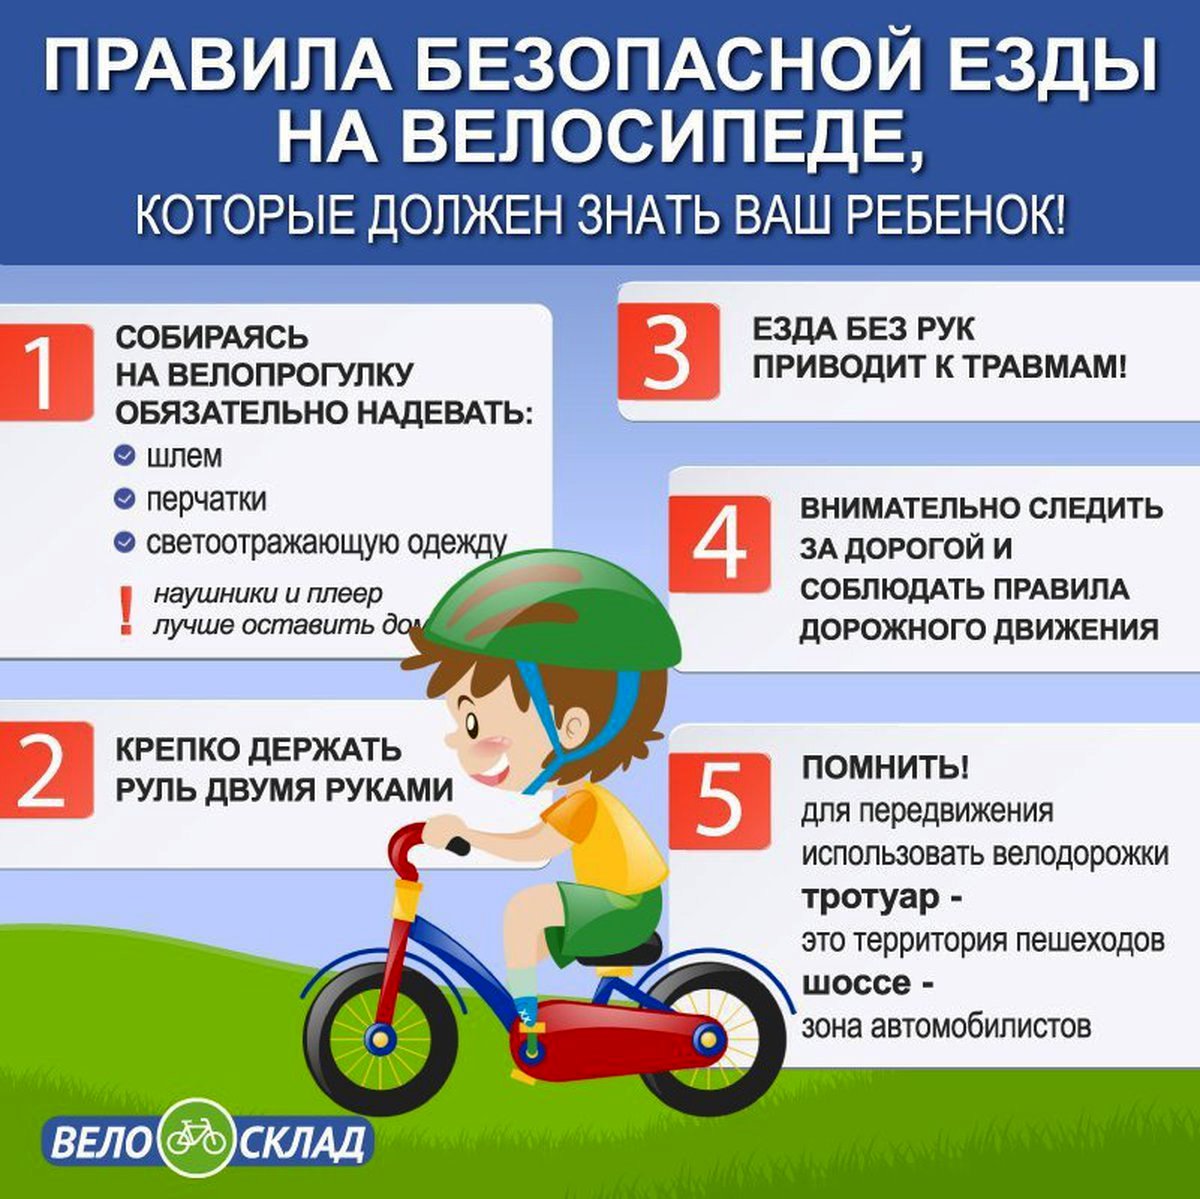 Памятка правила безопасной езды на велосипеде для детей